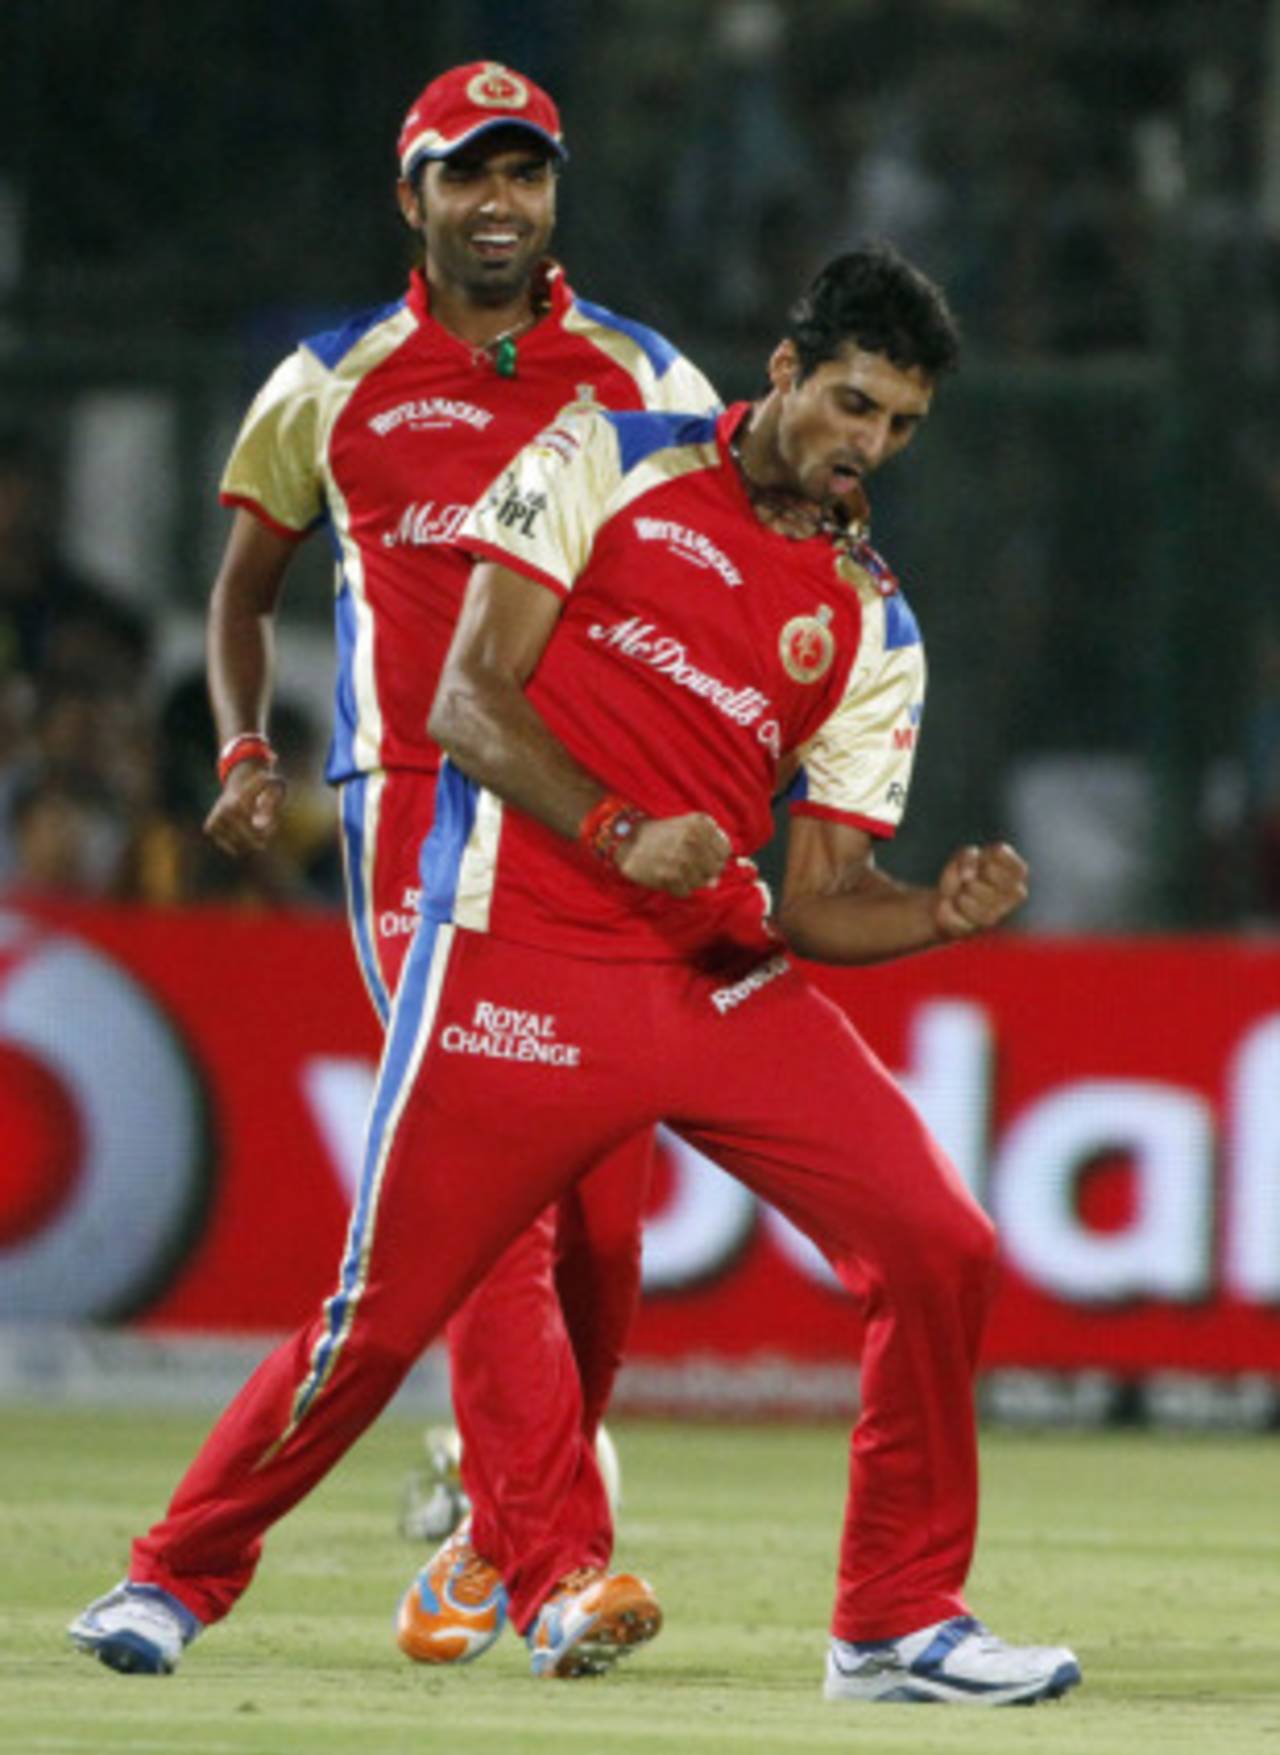 S Aravind: Fast bowler or spinner?&nbsp;&nbsp;&bull;&nbsp;&nbsp;AFP